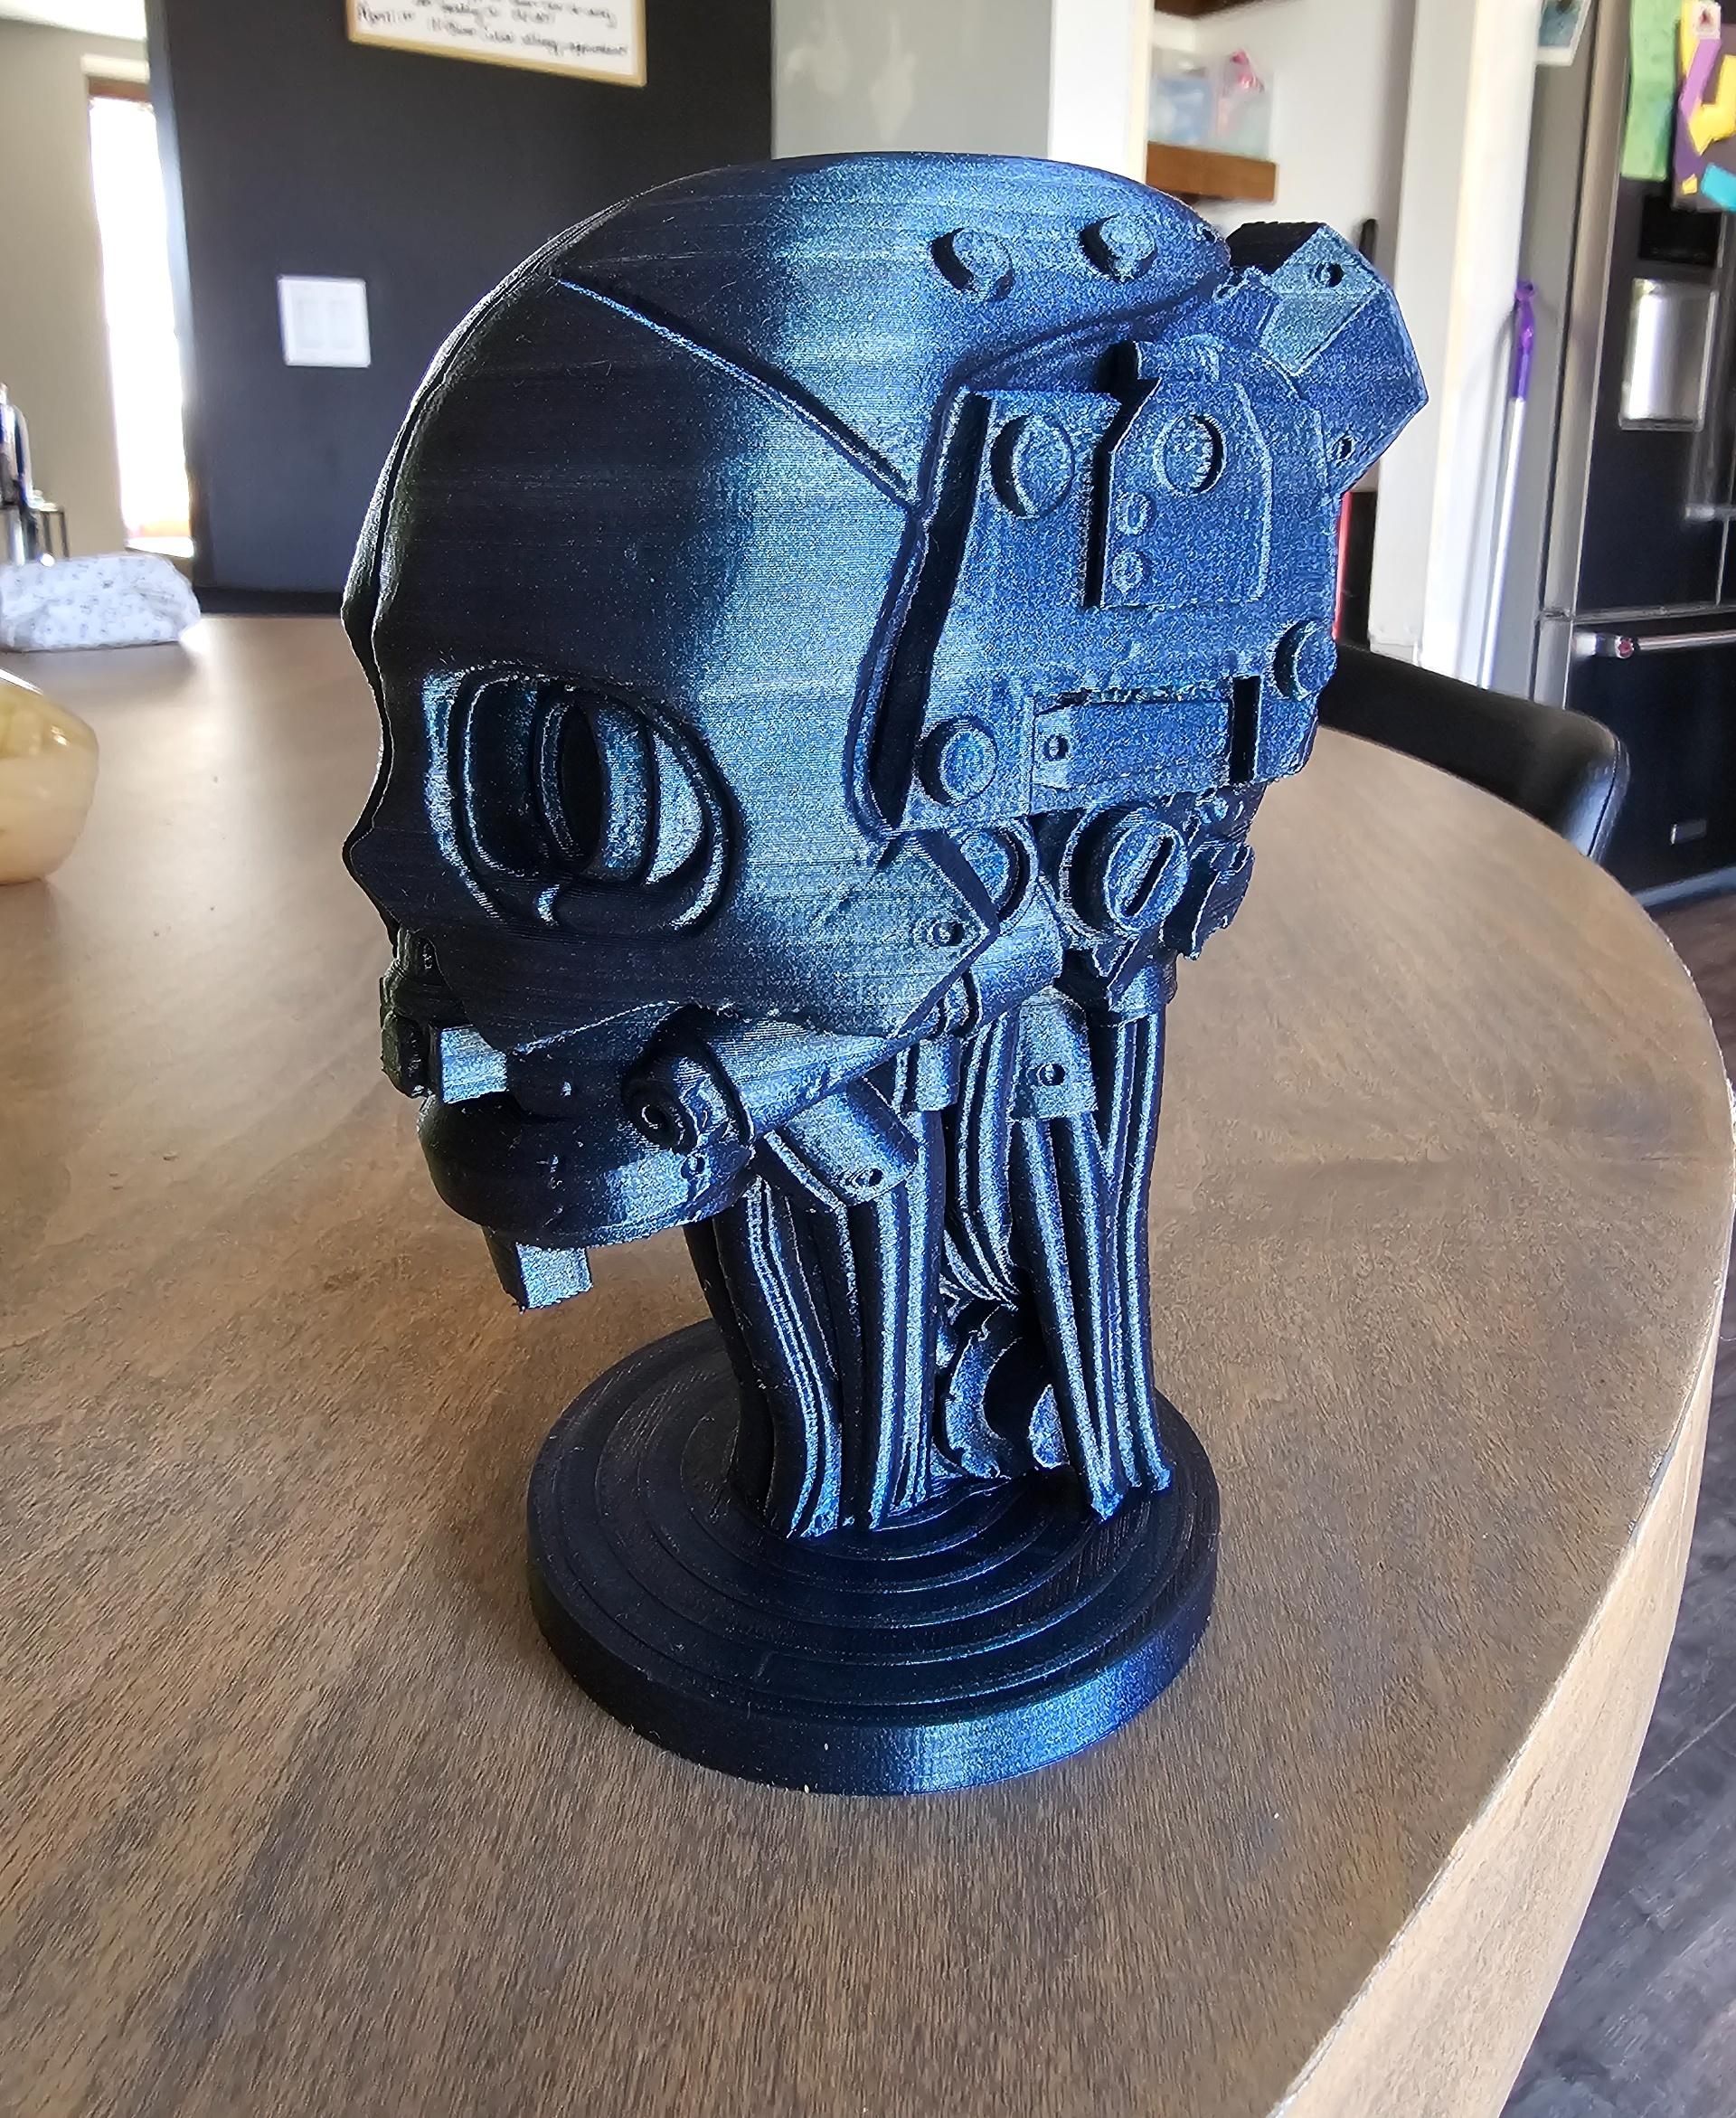 Automaton Head - Hell Divers 2 - Fan Art 3d model